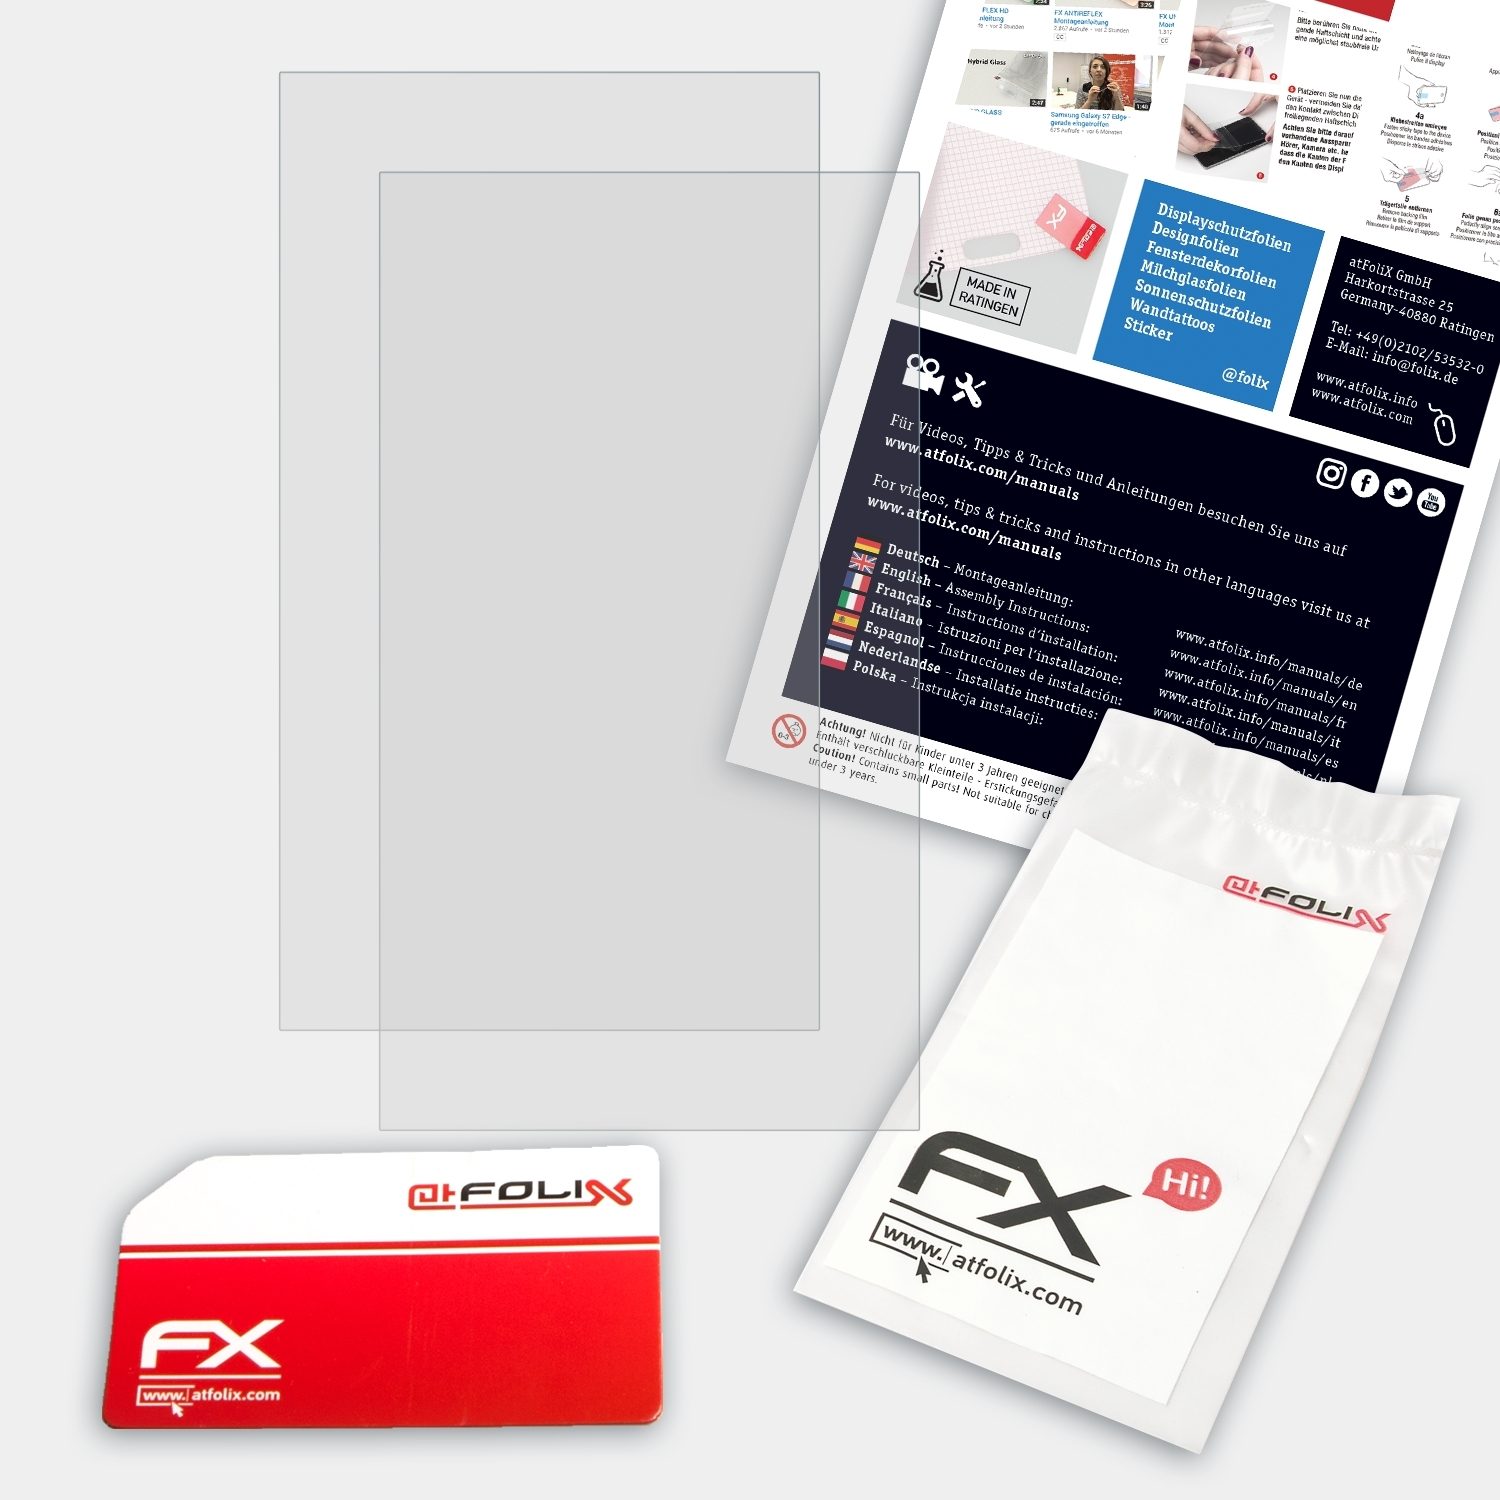 ATFOLIX ThinkPad FX-Antireflex 2x Lenovo Displayschutz(für T580)